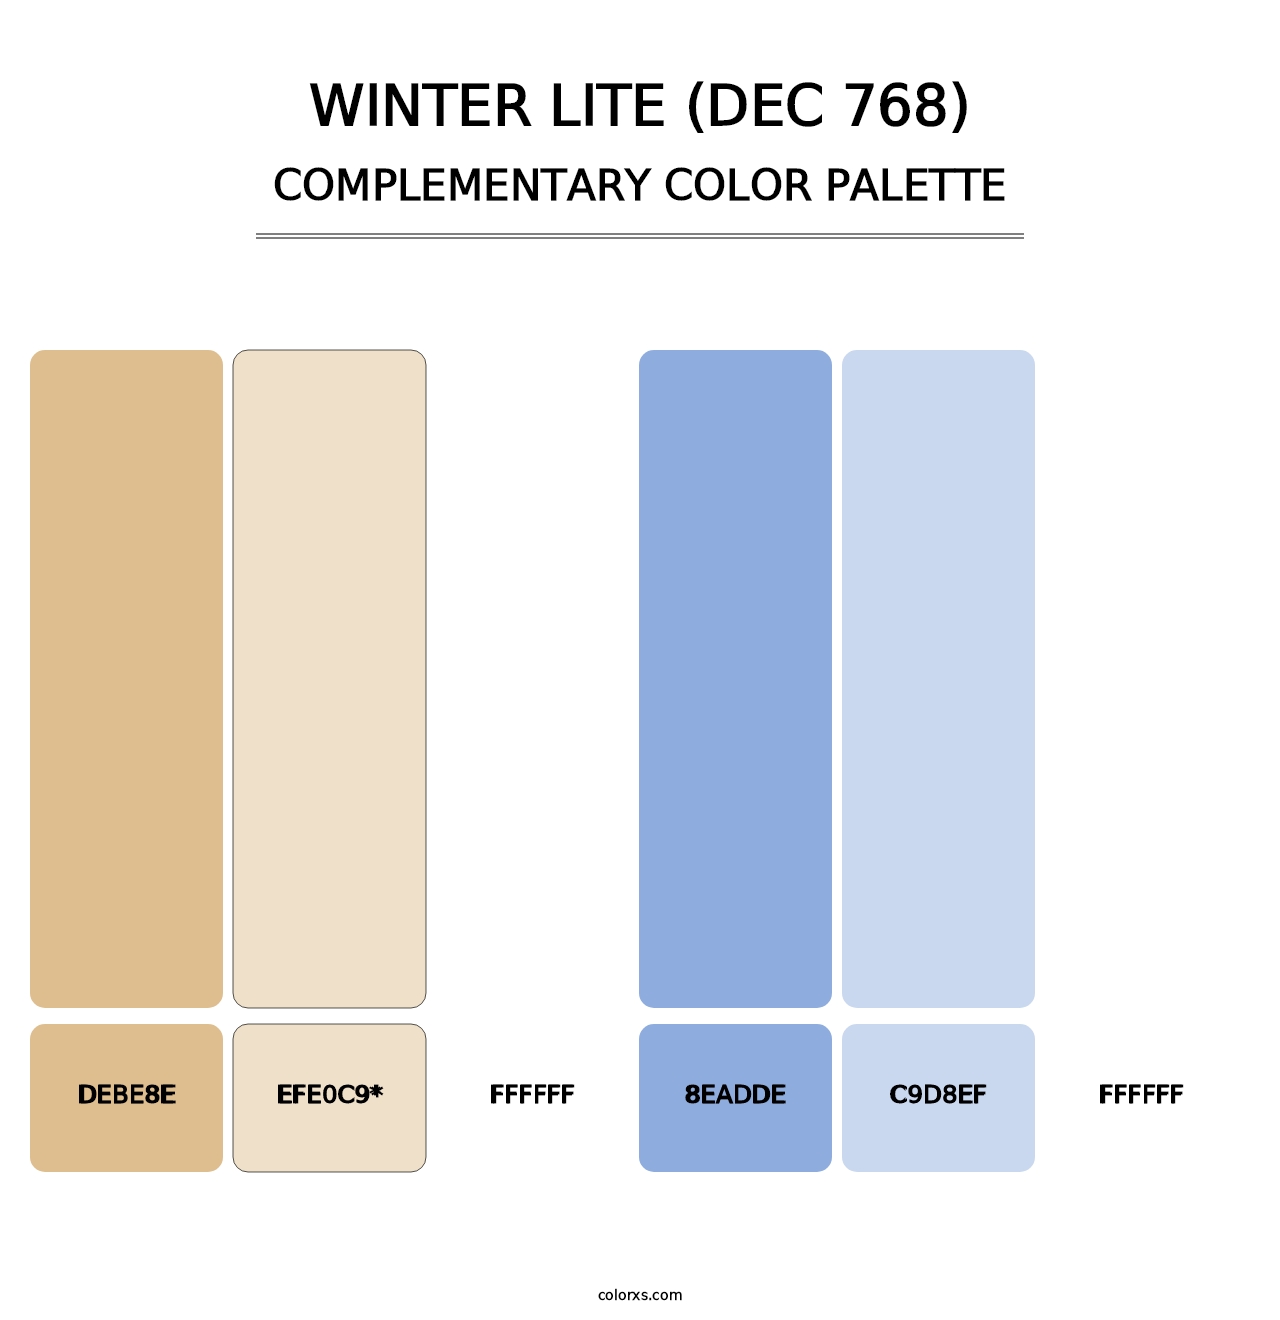 Winter Lite (DEC 768) - Complementary Color Palette